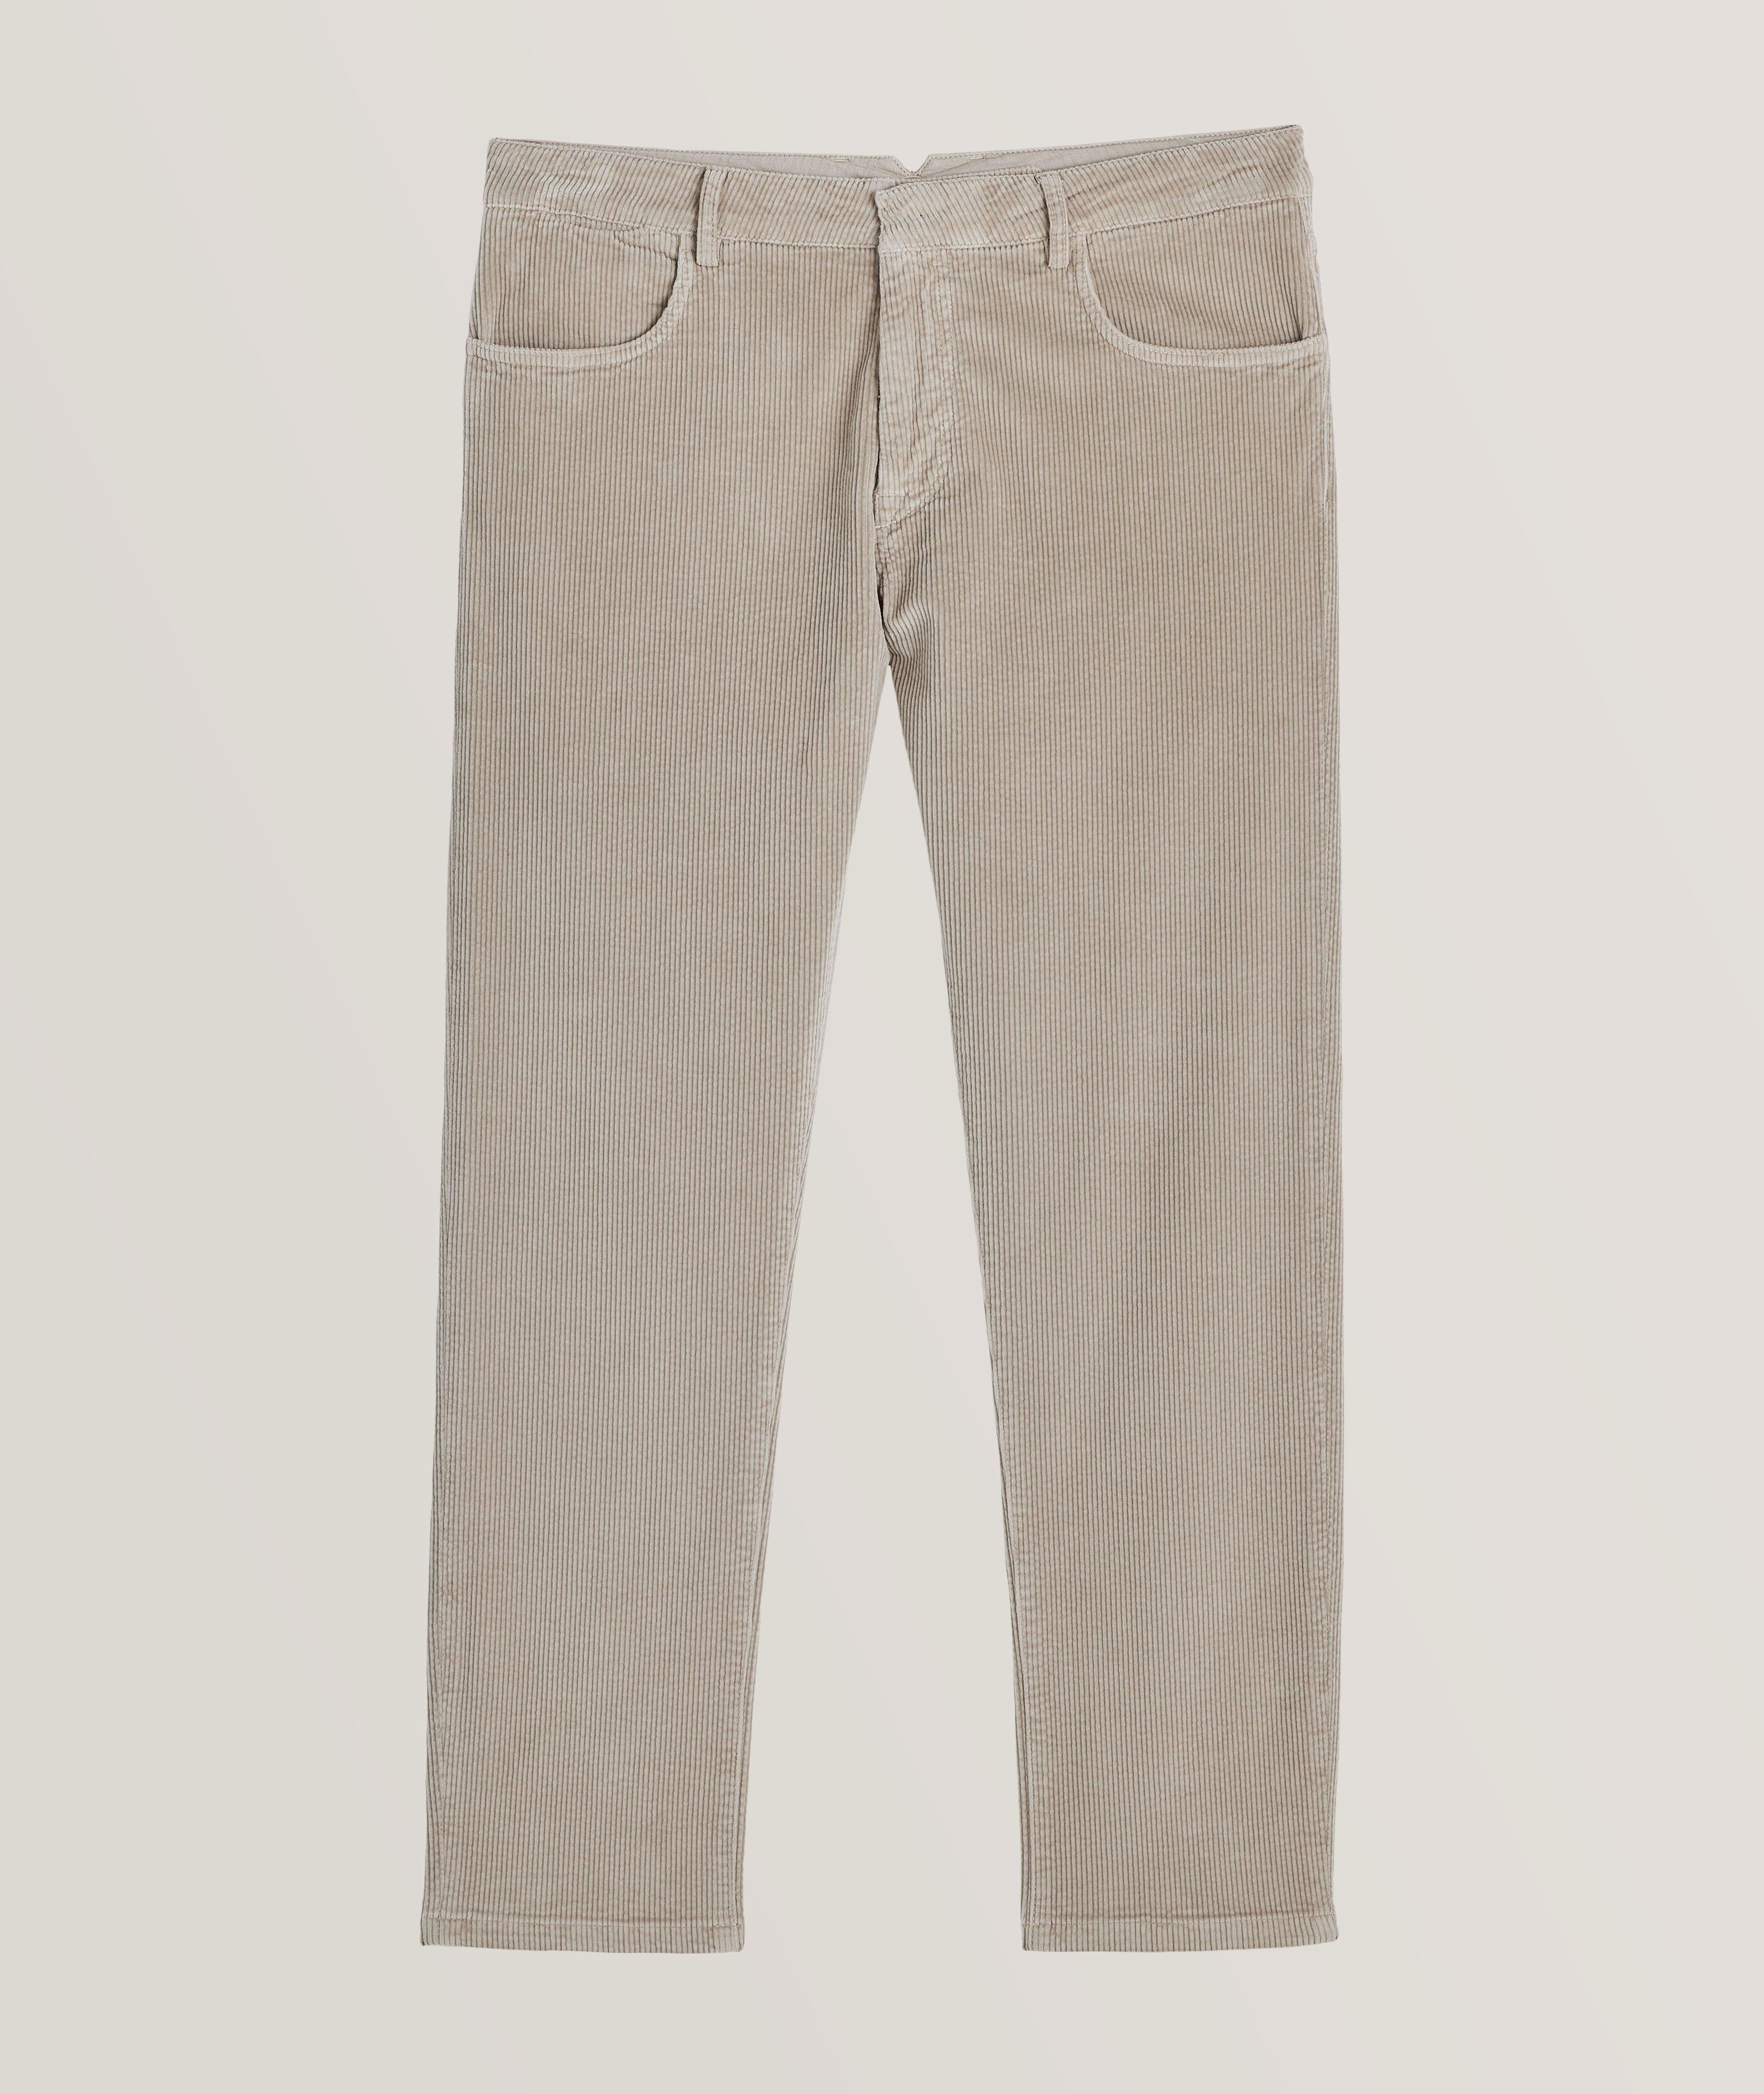 Platinum Corduroy Cotton Blend Pants  image 0